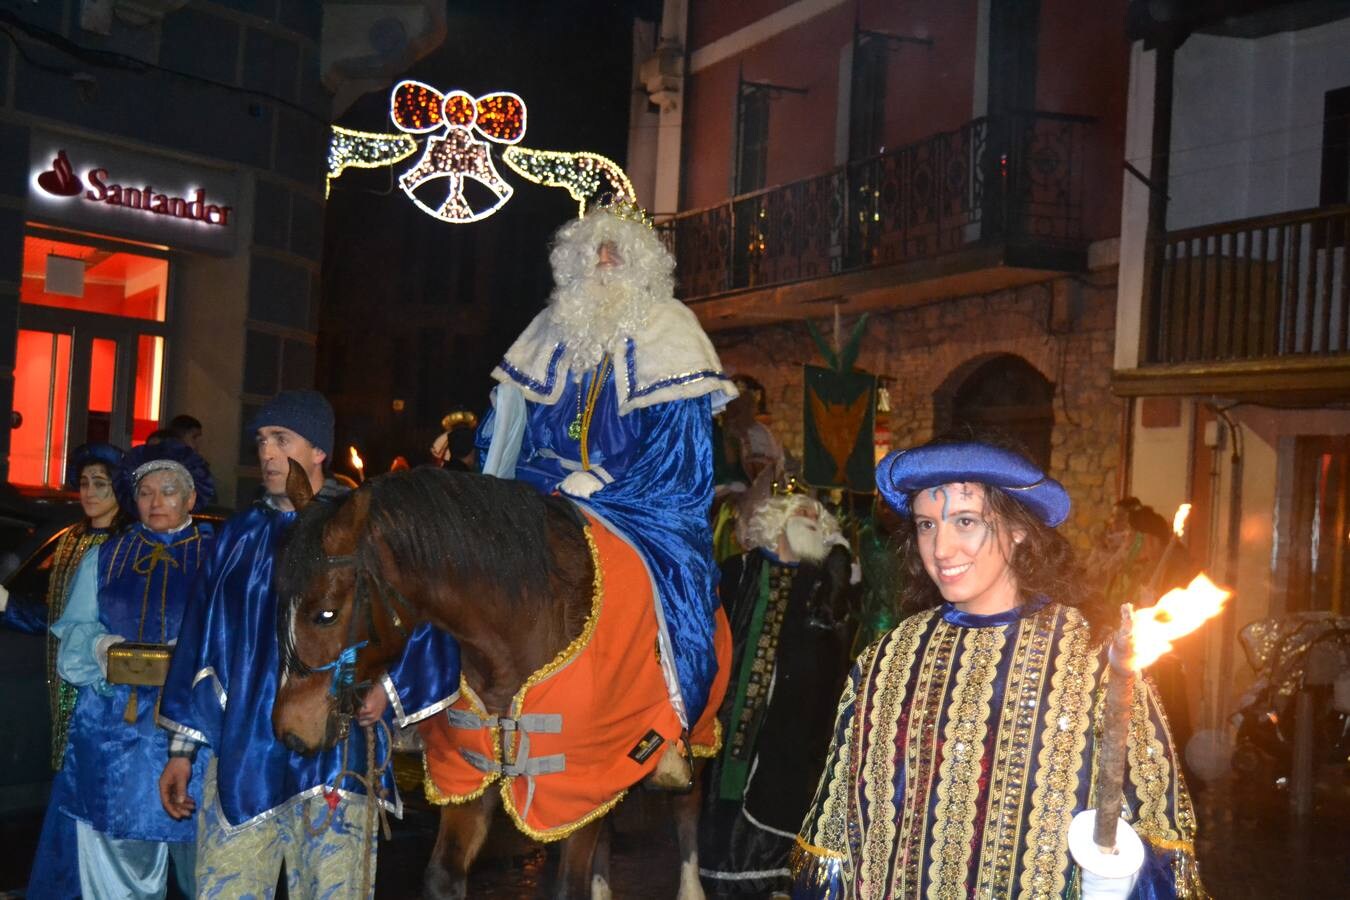 AMPUERO Los Reyes recorrieron a caballo el centro de Ampuero. Fotos: Irene Bajo